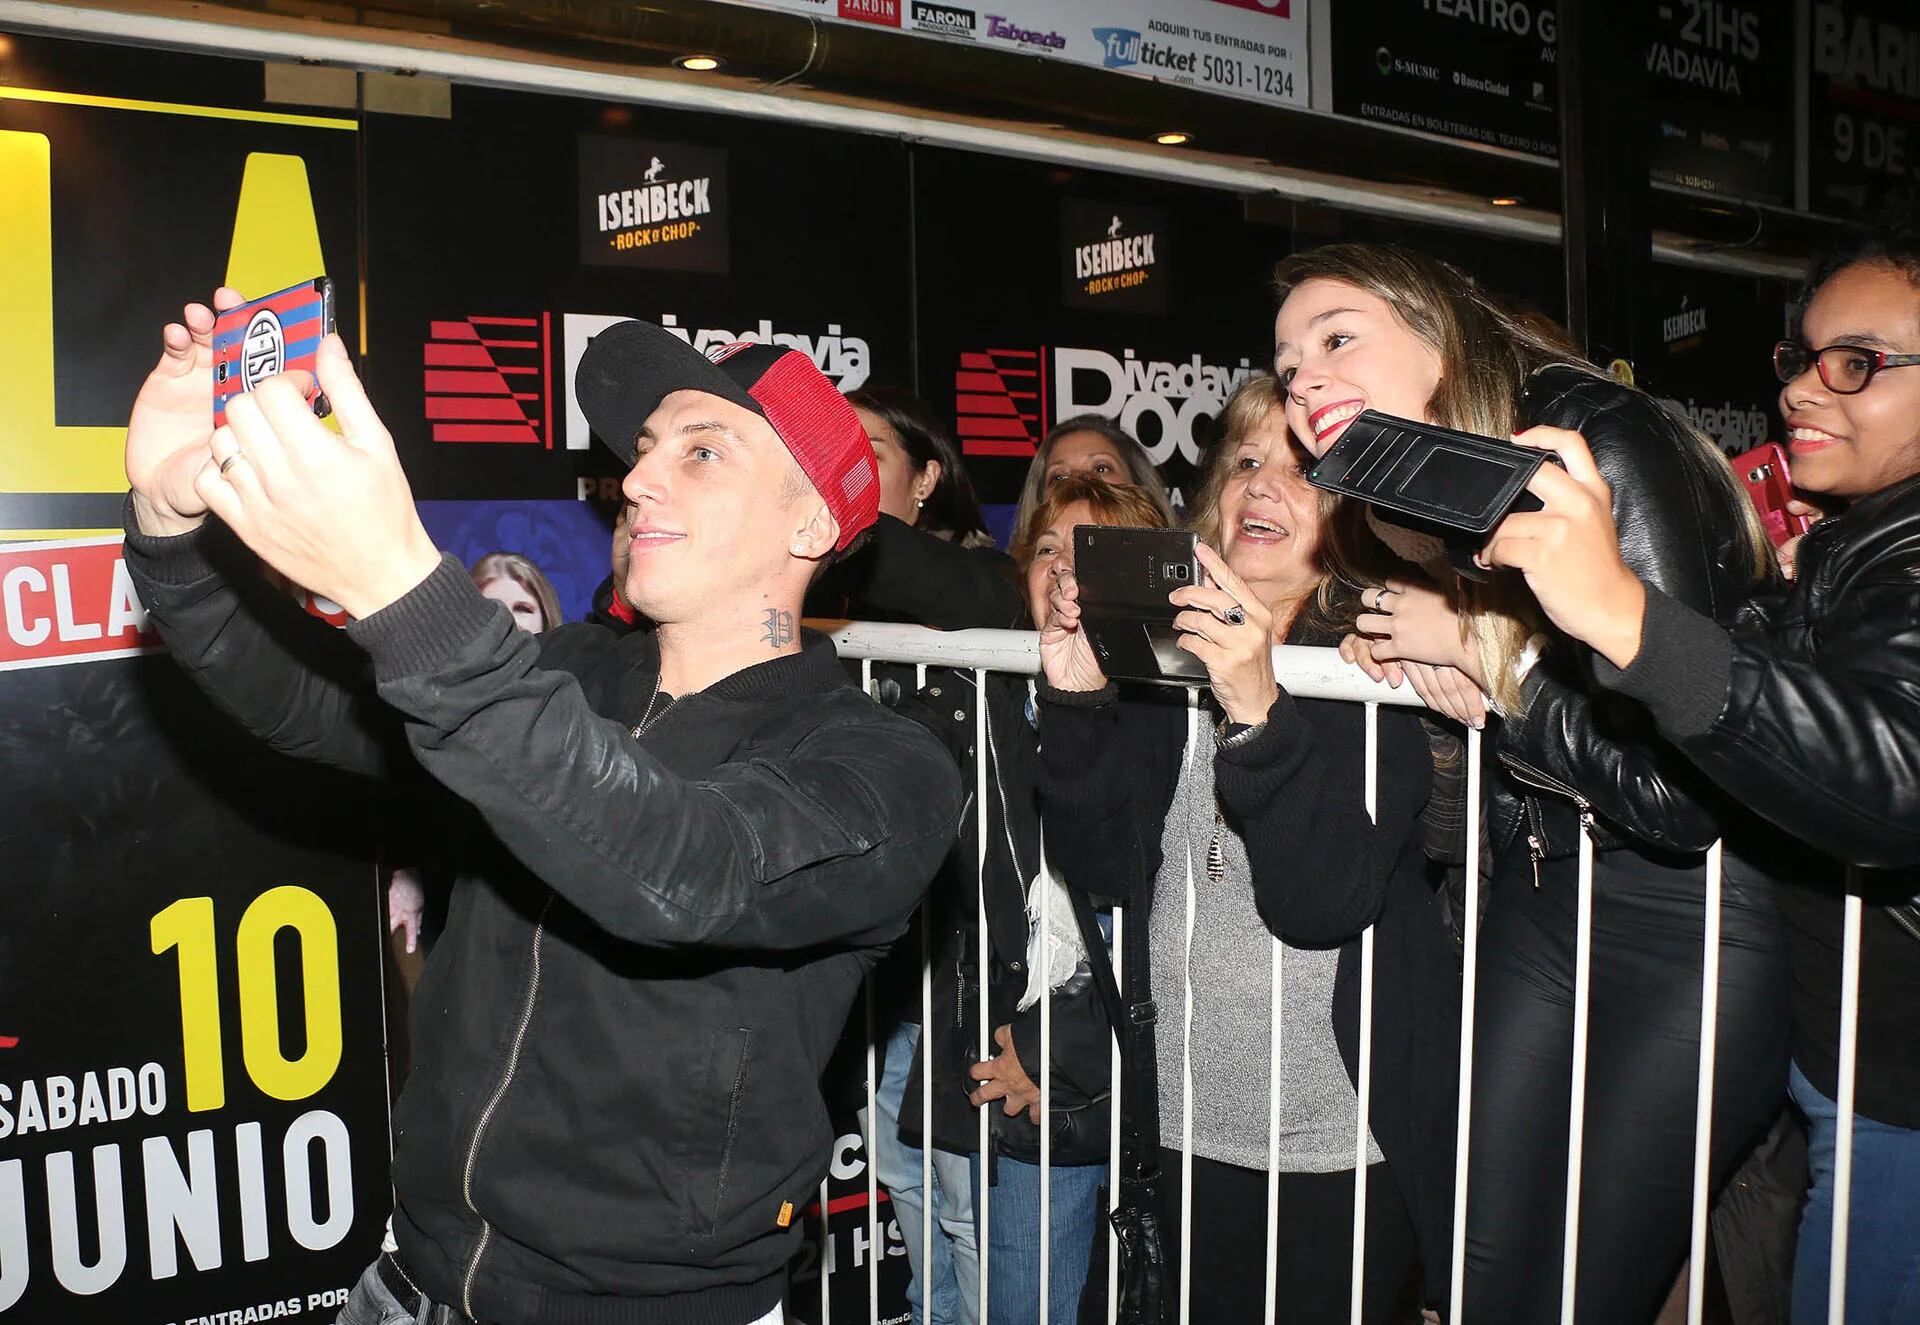 El Polaco y una selfie con sus fans (Verónica Guerman / Teleshow)